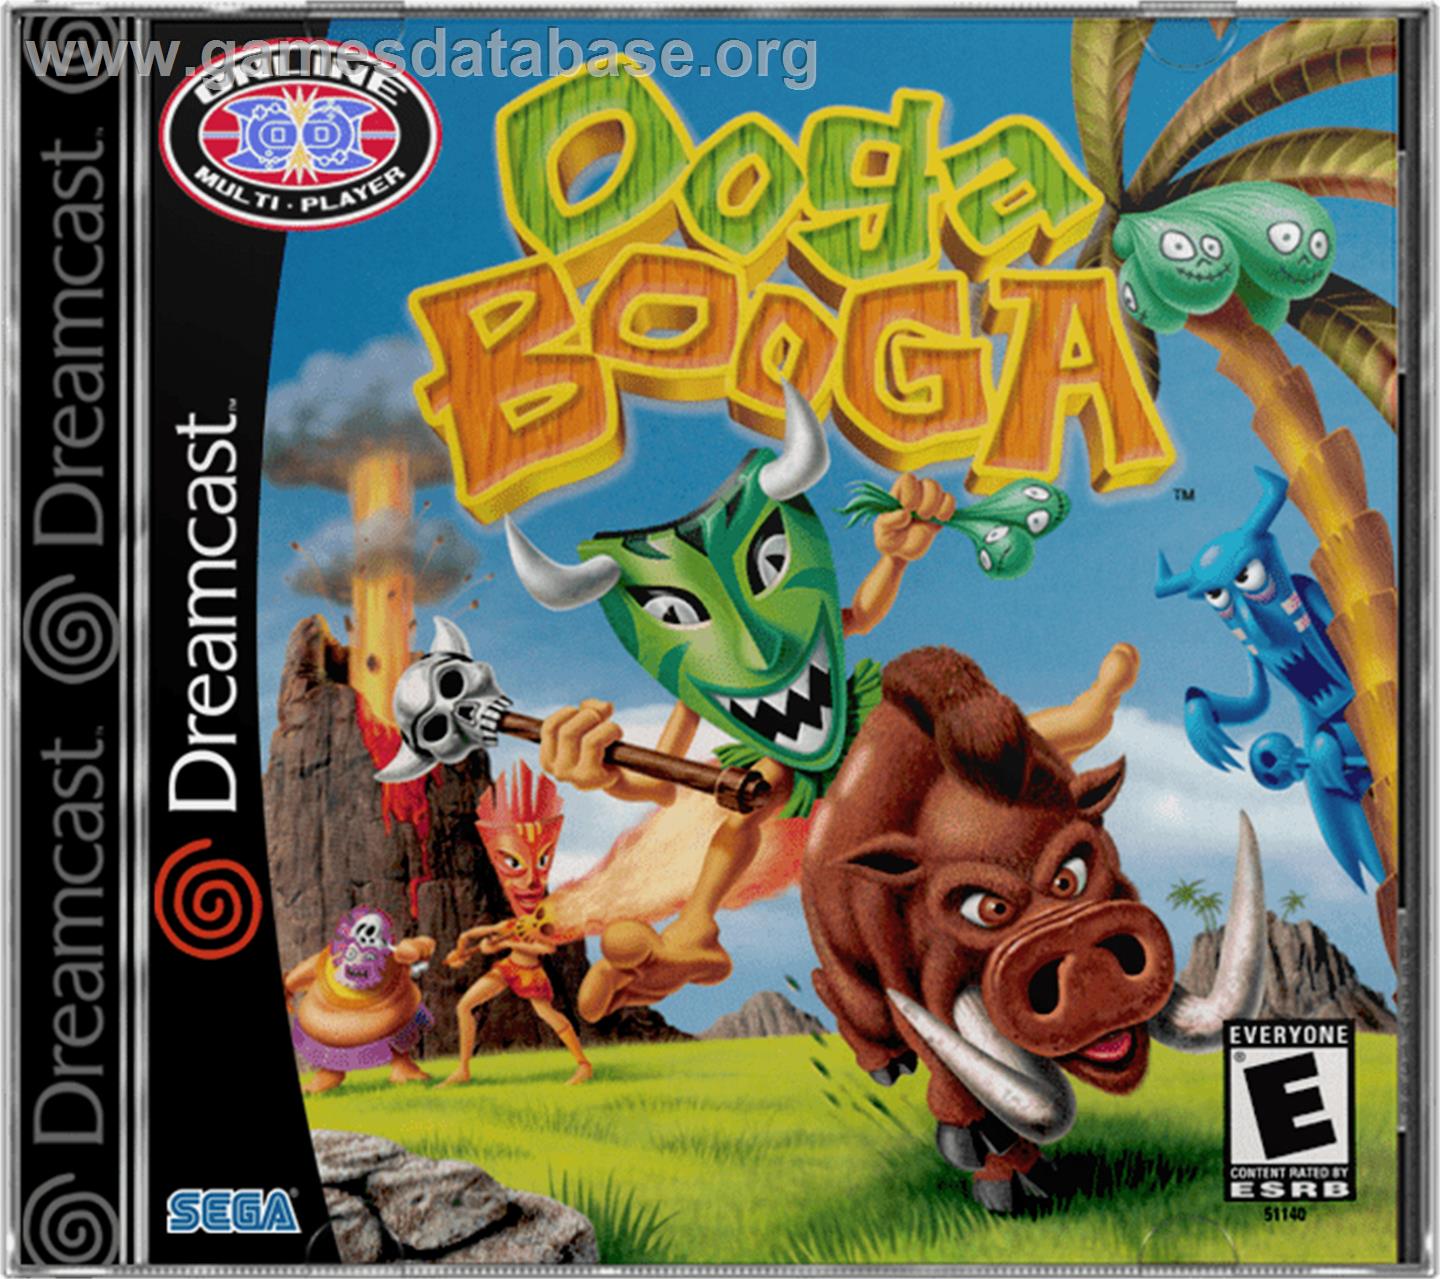 Ooga Booga - Sega Dreamcast - Artwork - Box